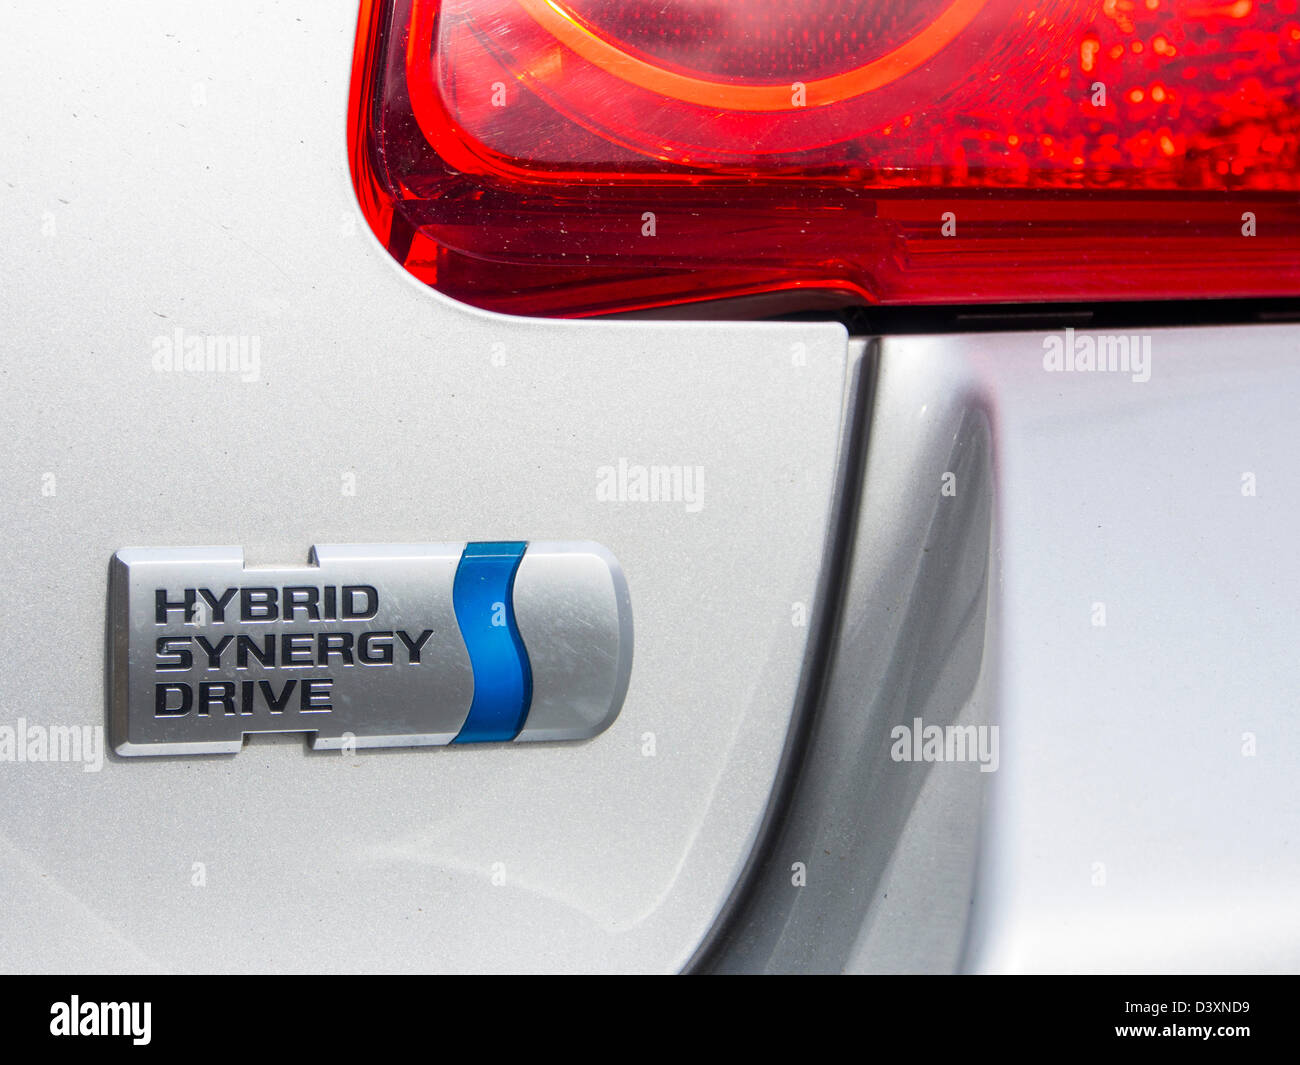 A Toyota Aura a hybrid synergy drive car. Stock Photo